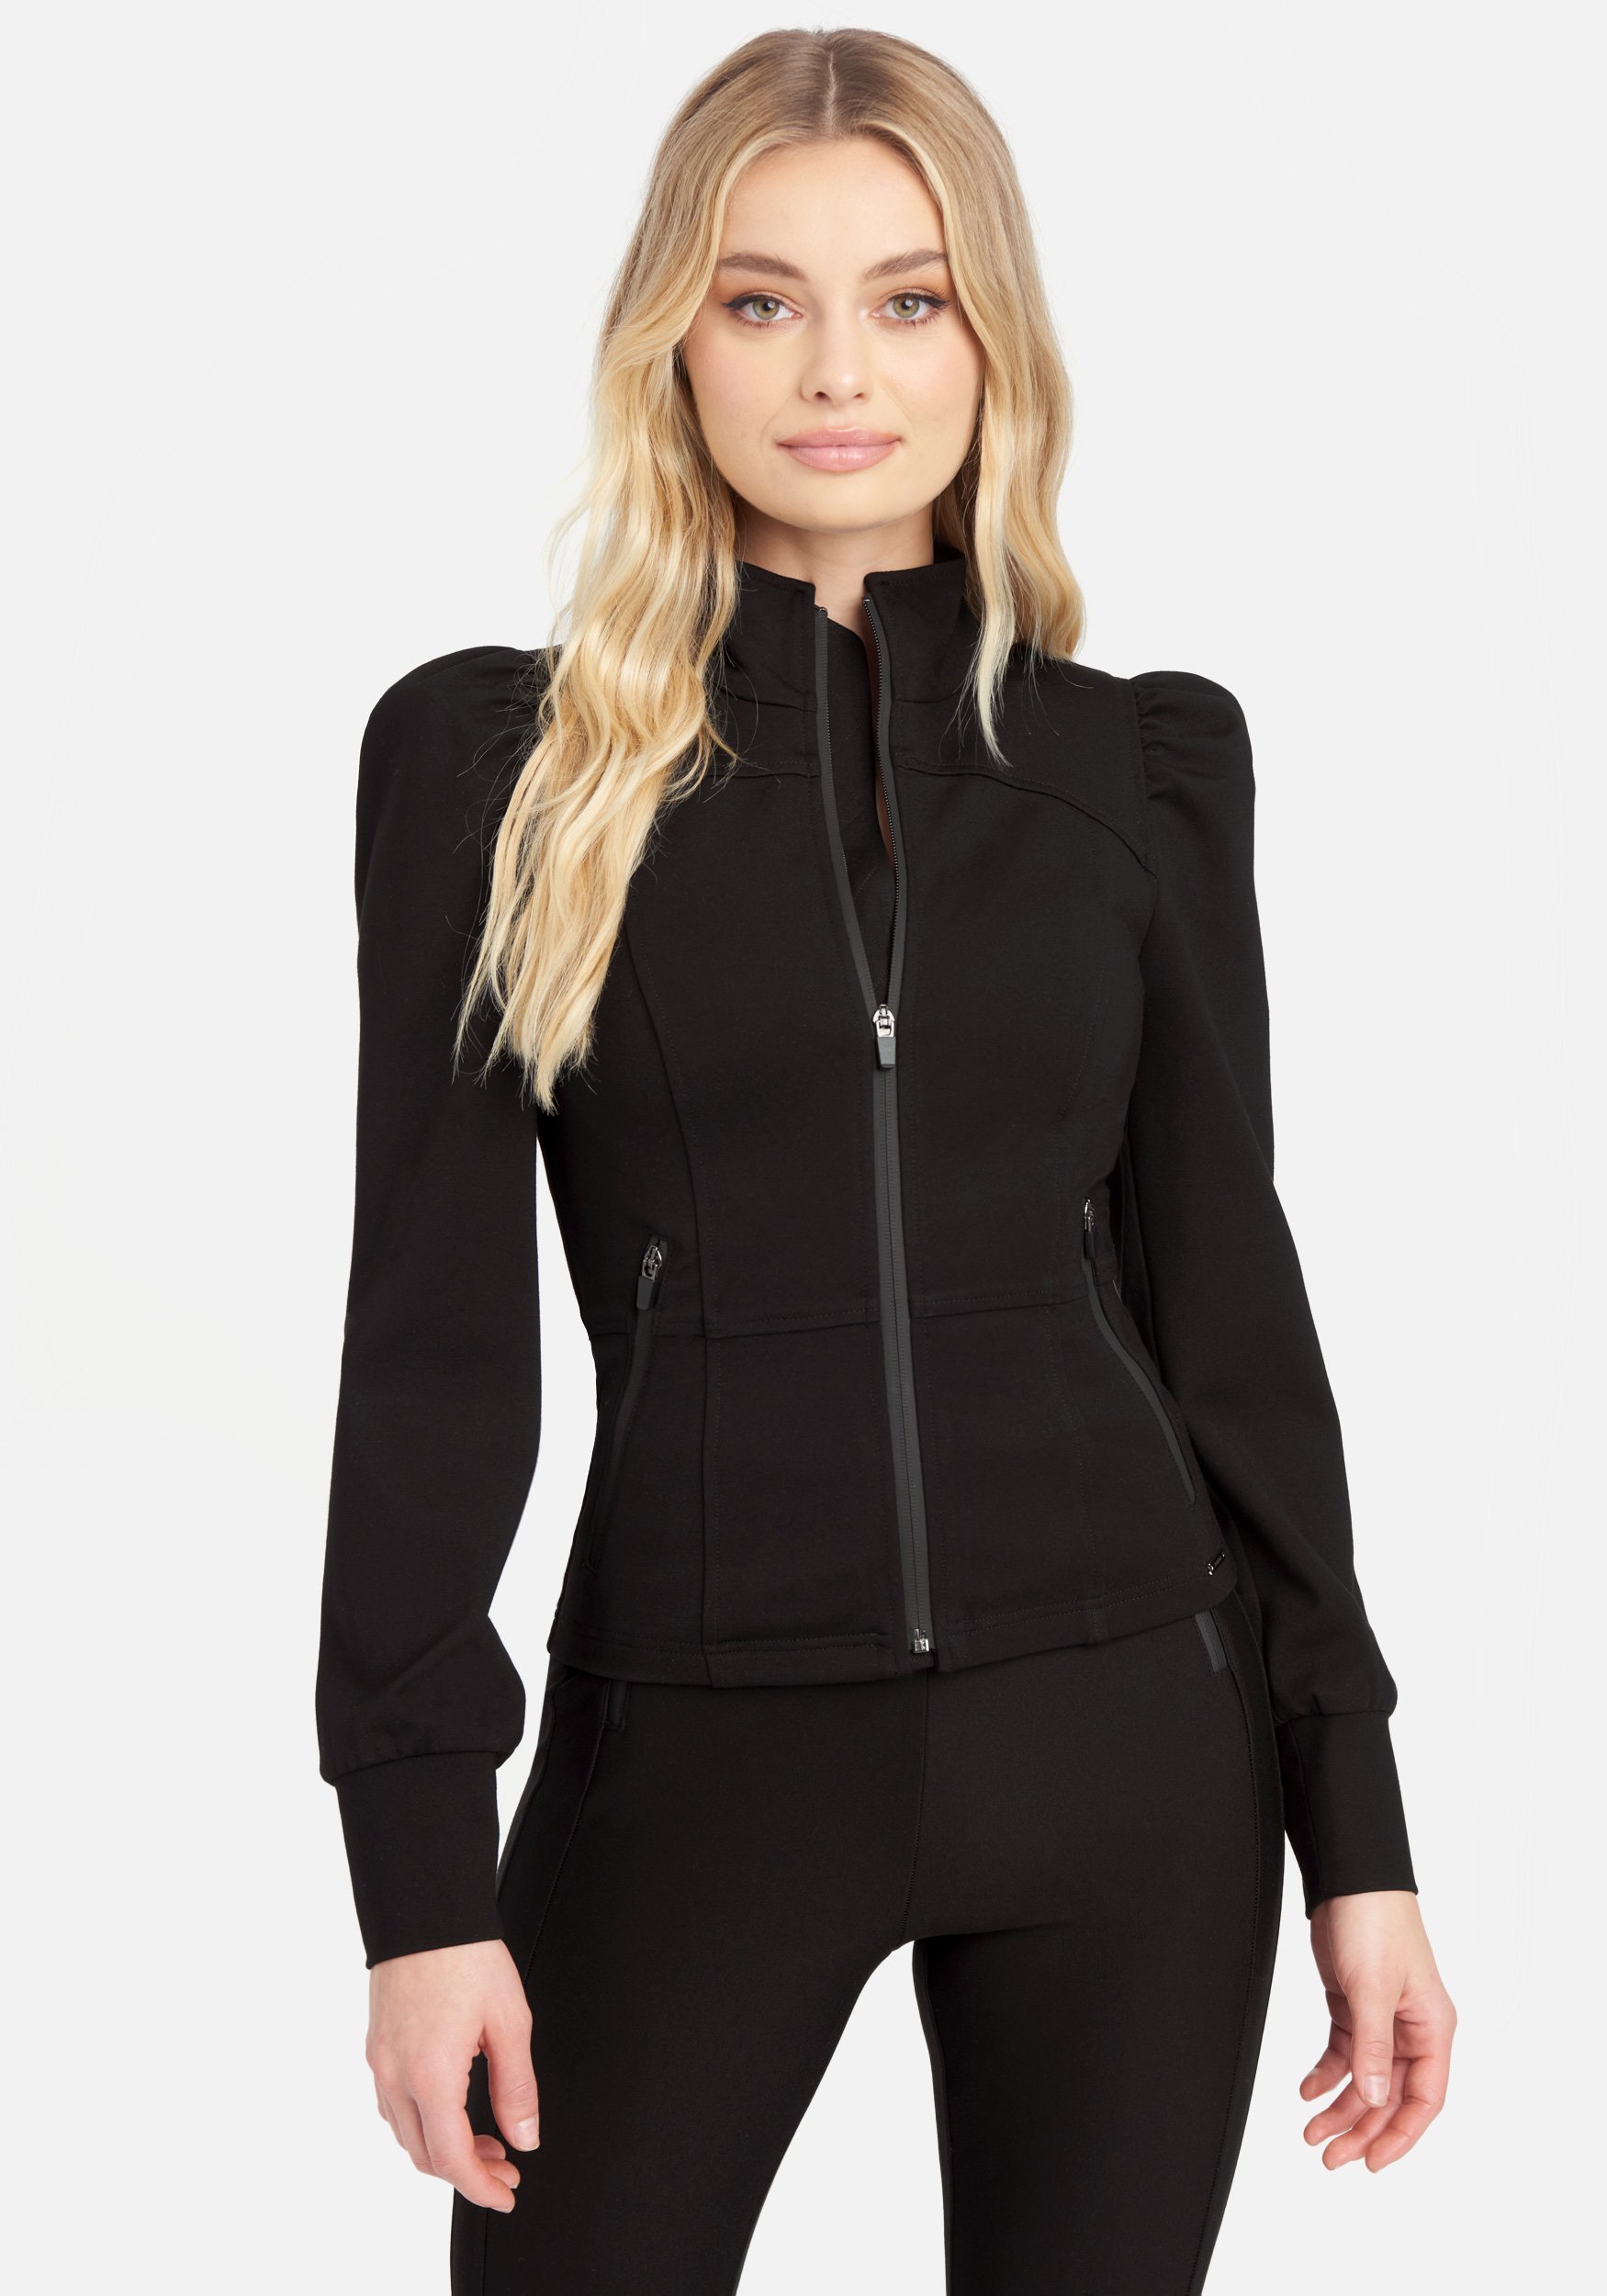 Bebe Women's Ponte Zipper Detail Jacket, Size XL in Black Spandex/Nylon